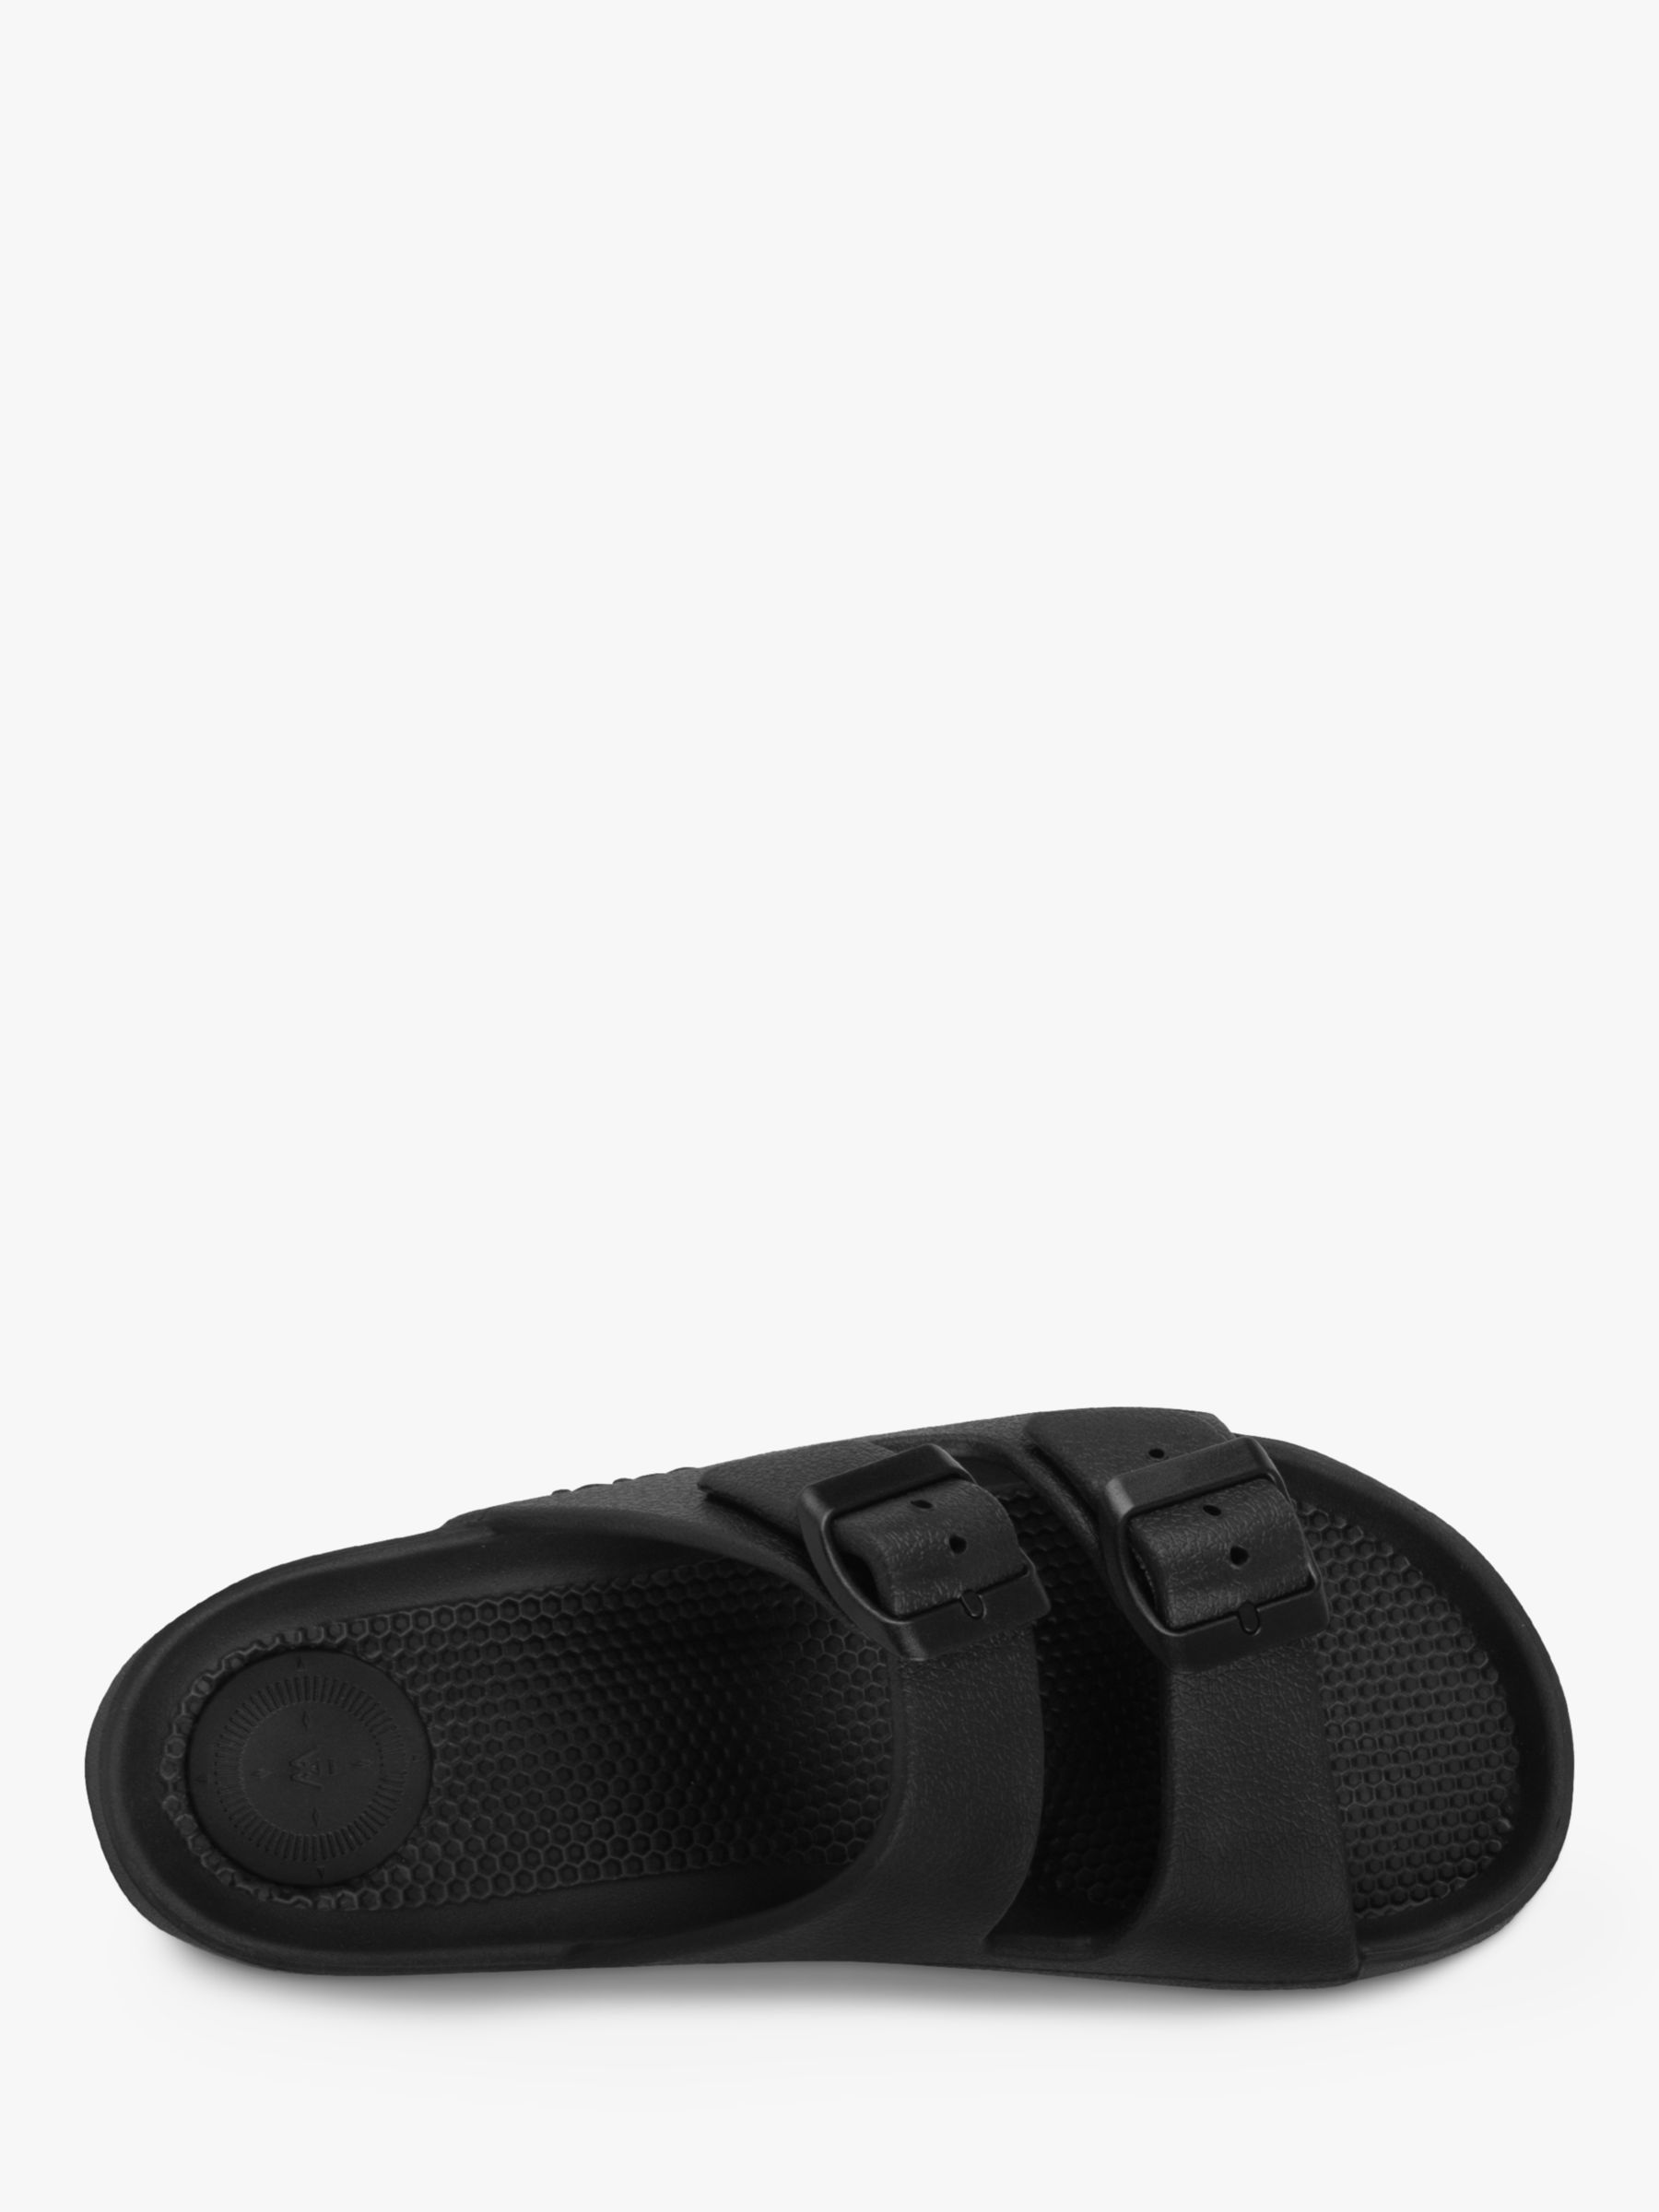 Buy totes SOLBOUNCE Adjustable Buckle Slide Sandals Online at johnlewis.com